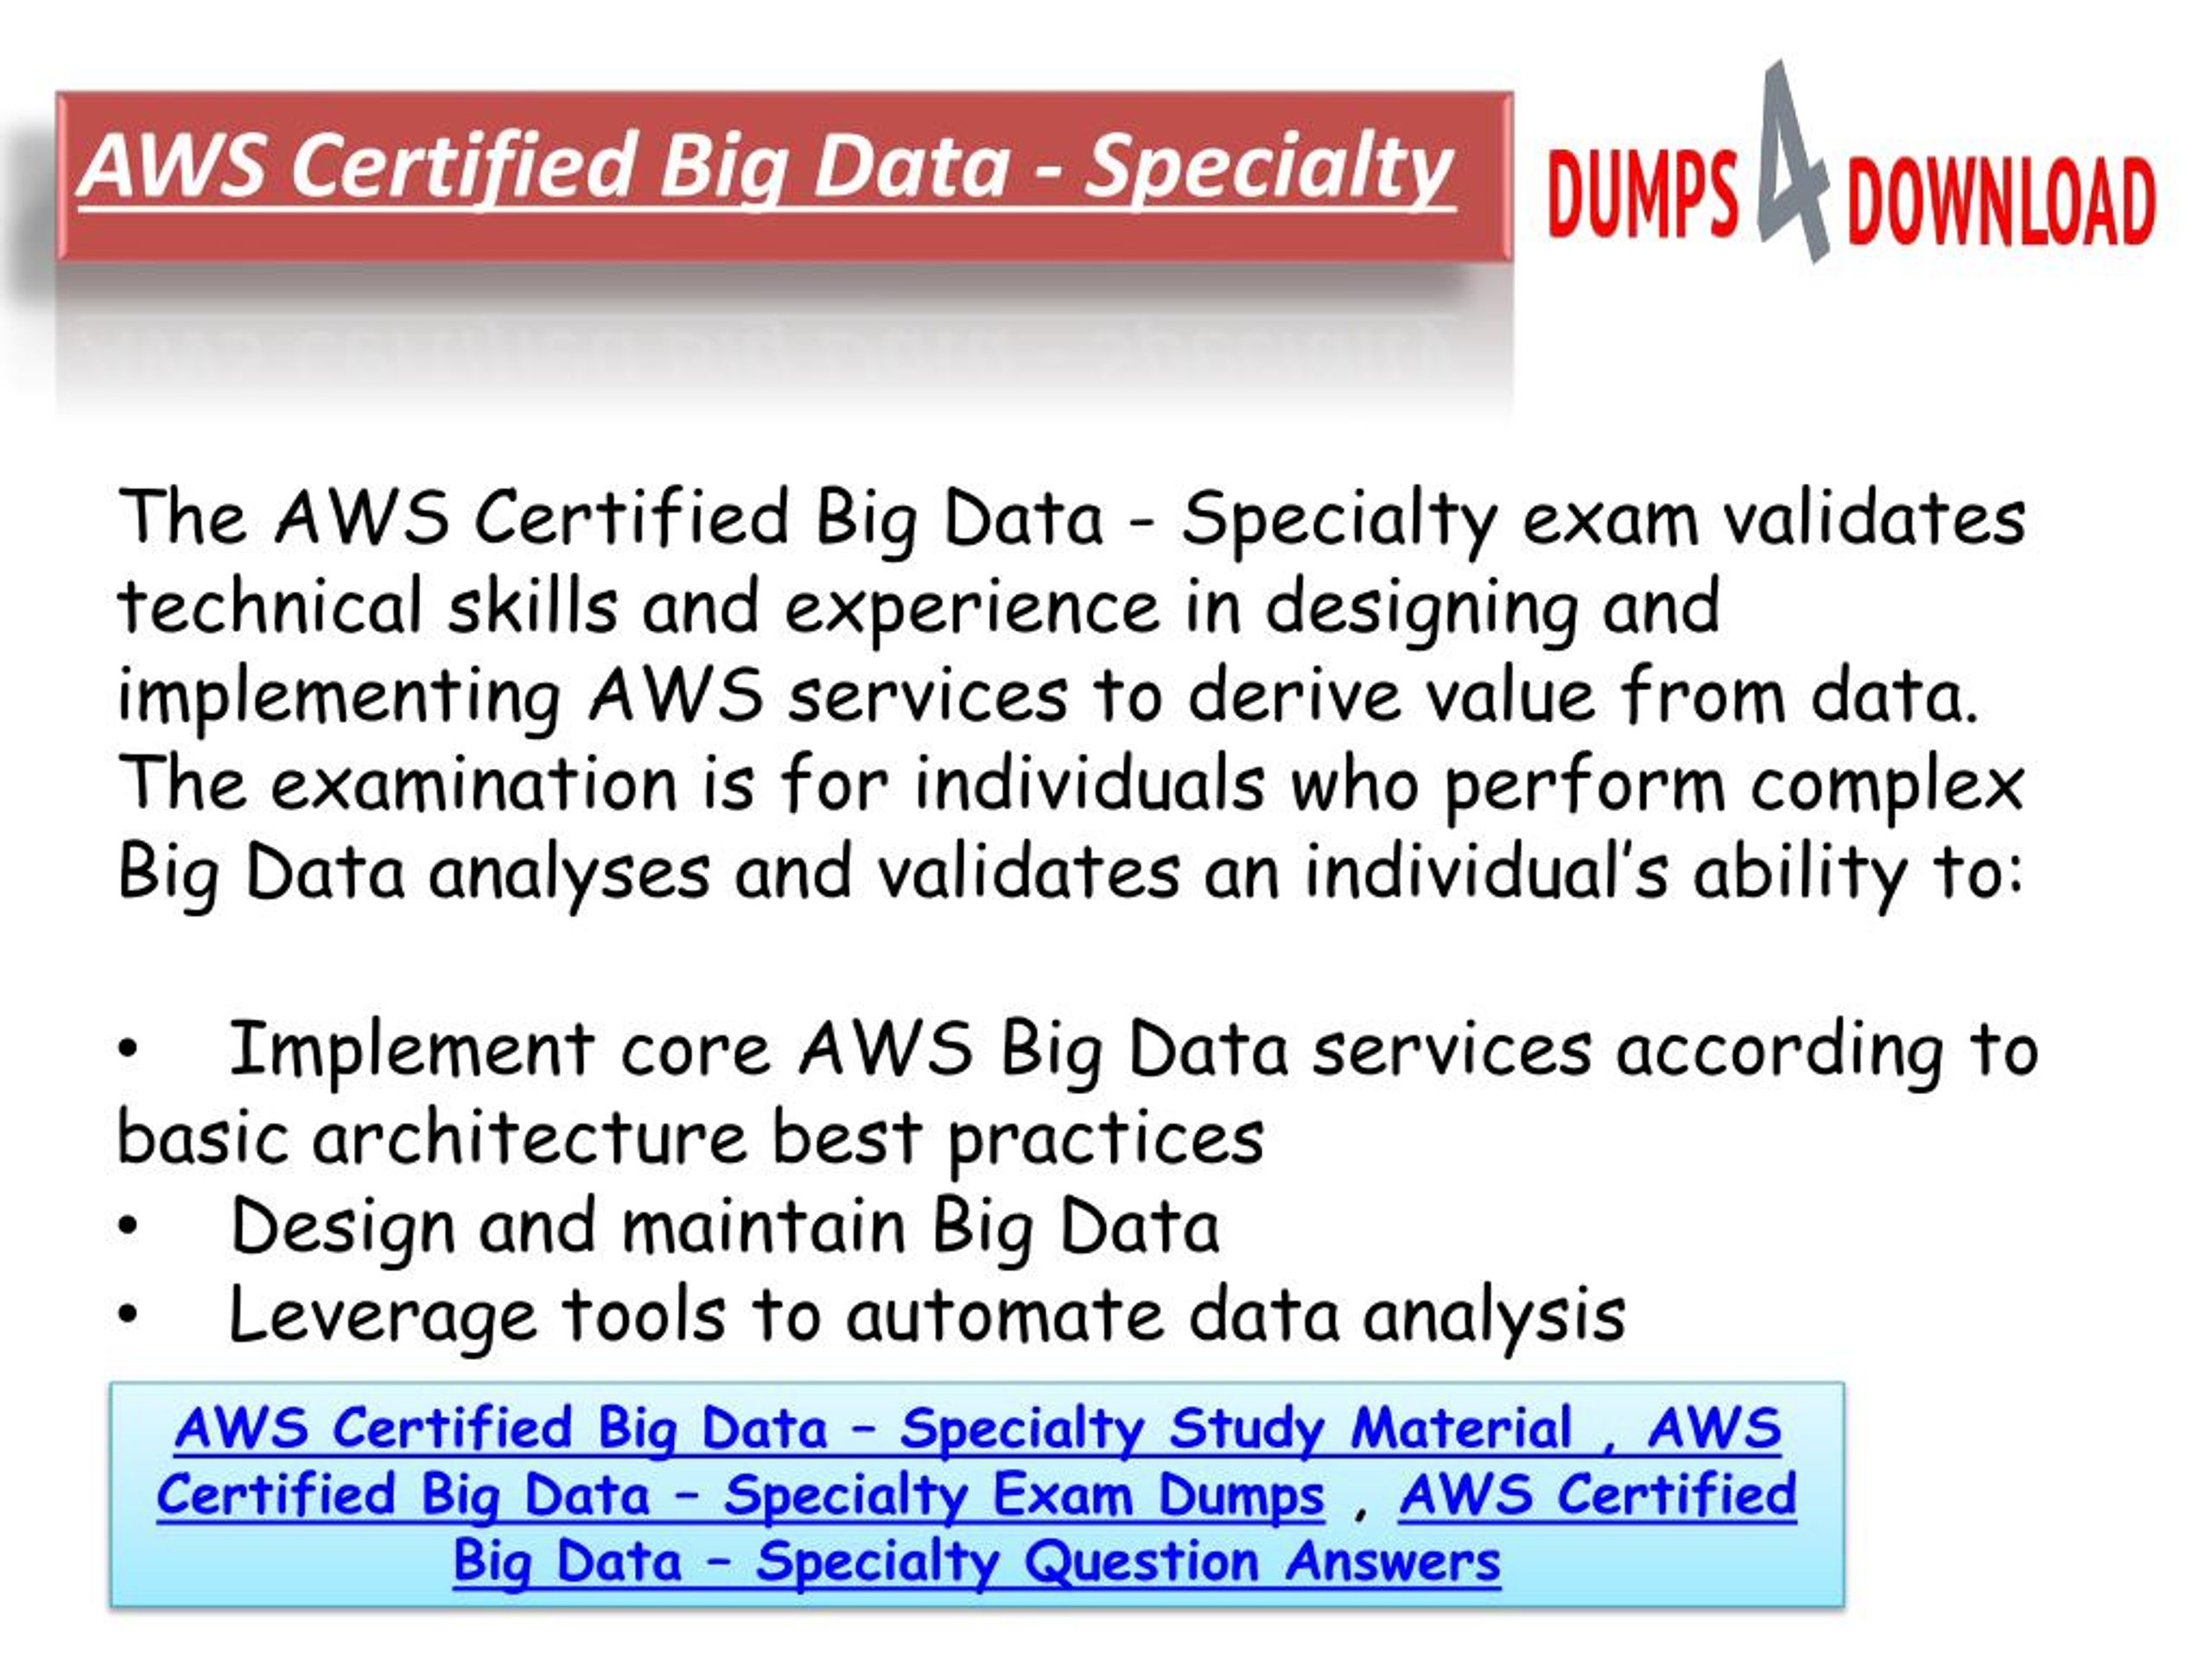 AWS-Certified-Data-Analytics-Specialty Prüfungsaufgaben